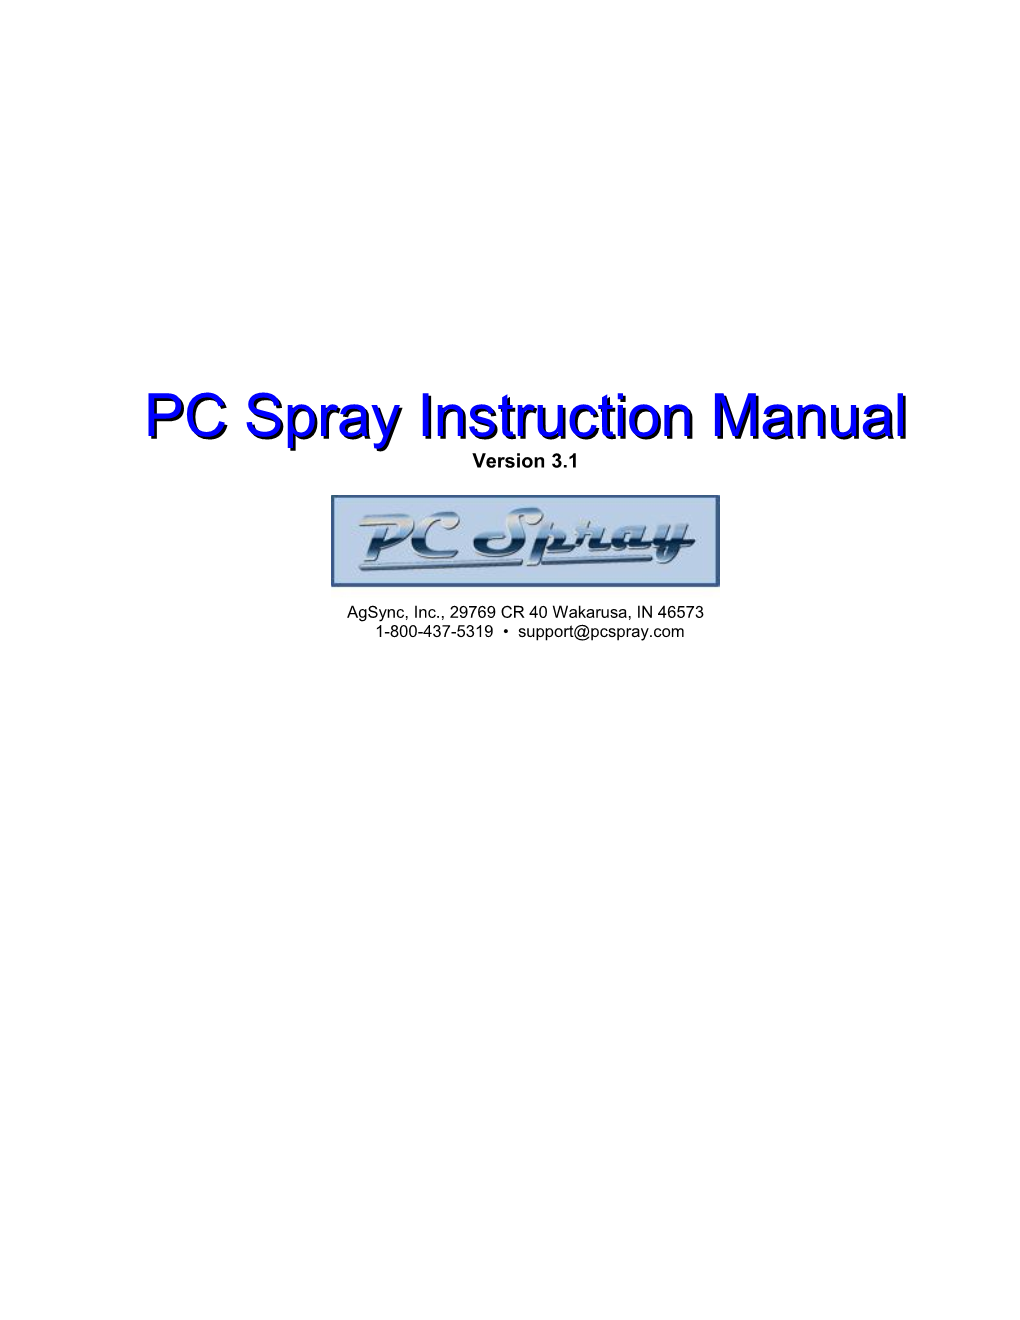 PC Spray Manual